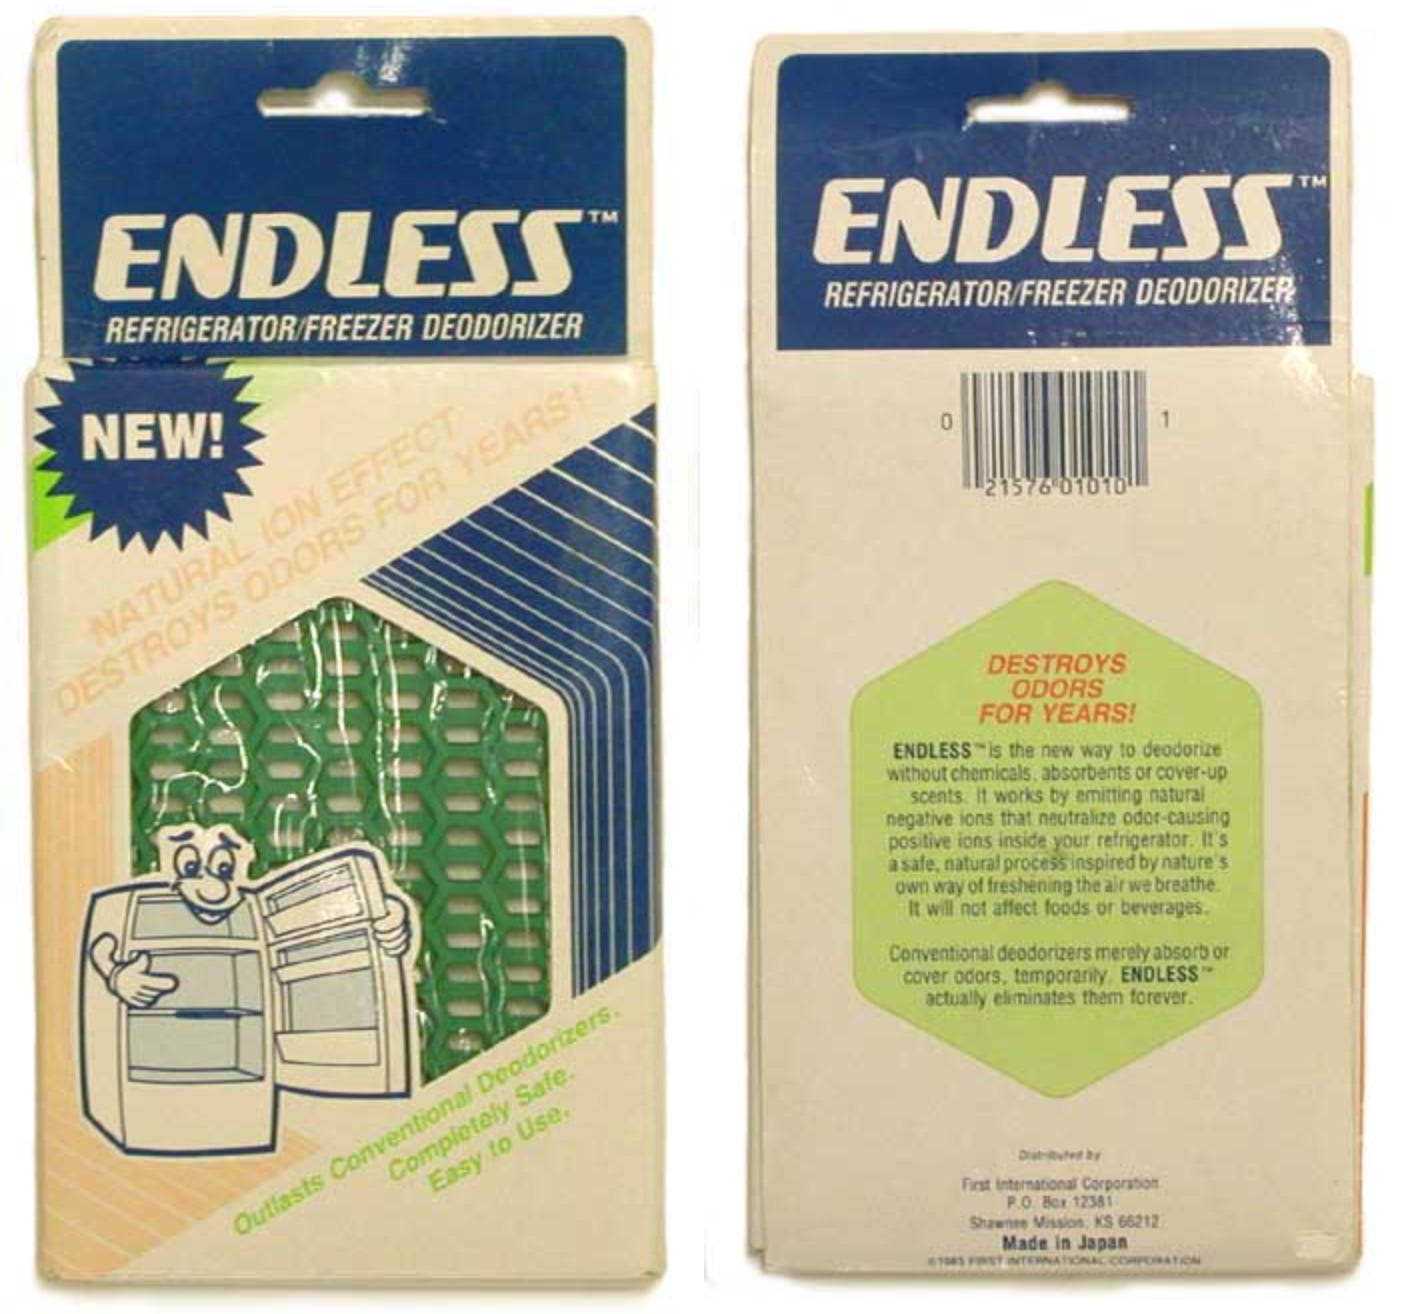 The Endless Refrigerator/Freezer Deodorizer (ca. 1983)